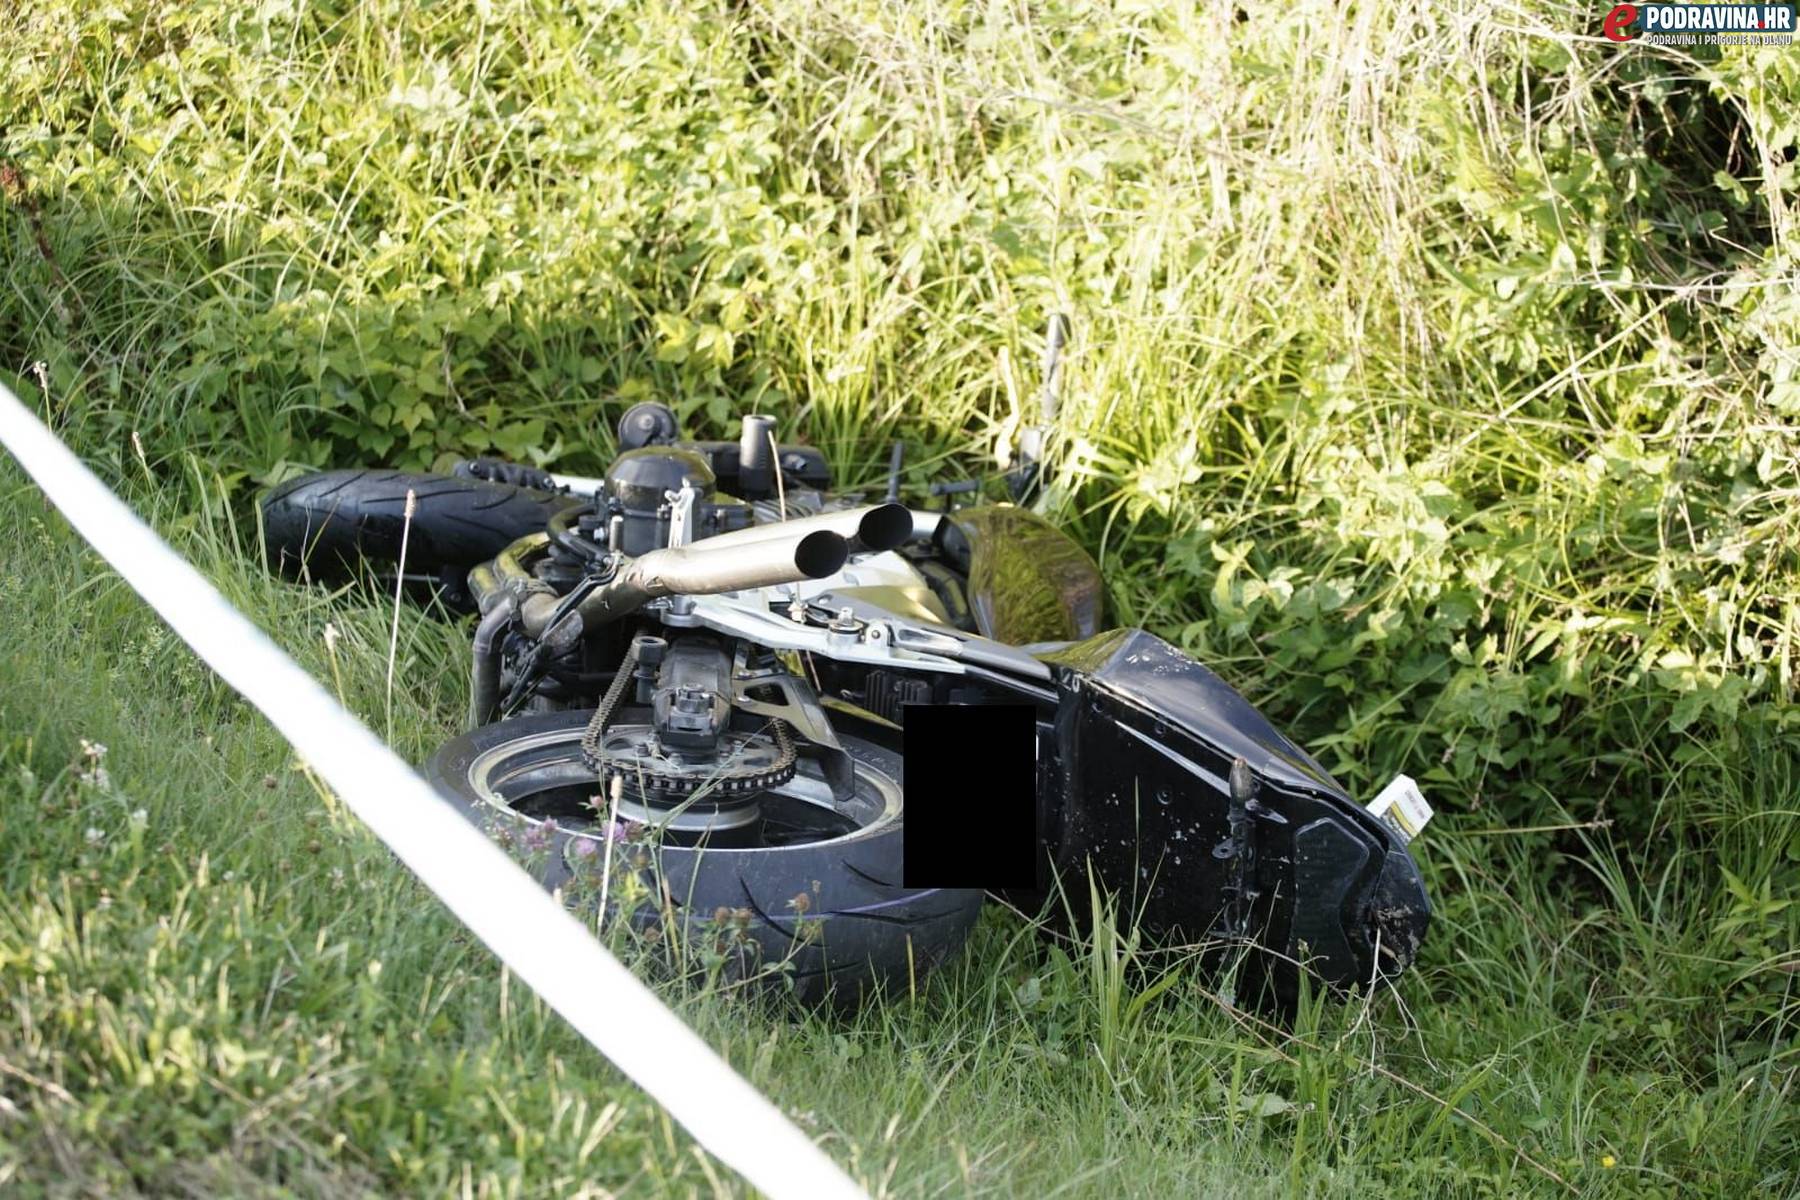 Motociklist koji je poginuo kod Đurđevca nije imao vozačku